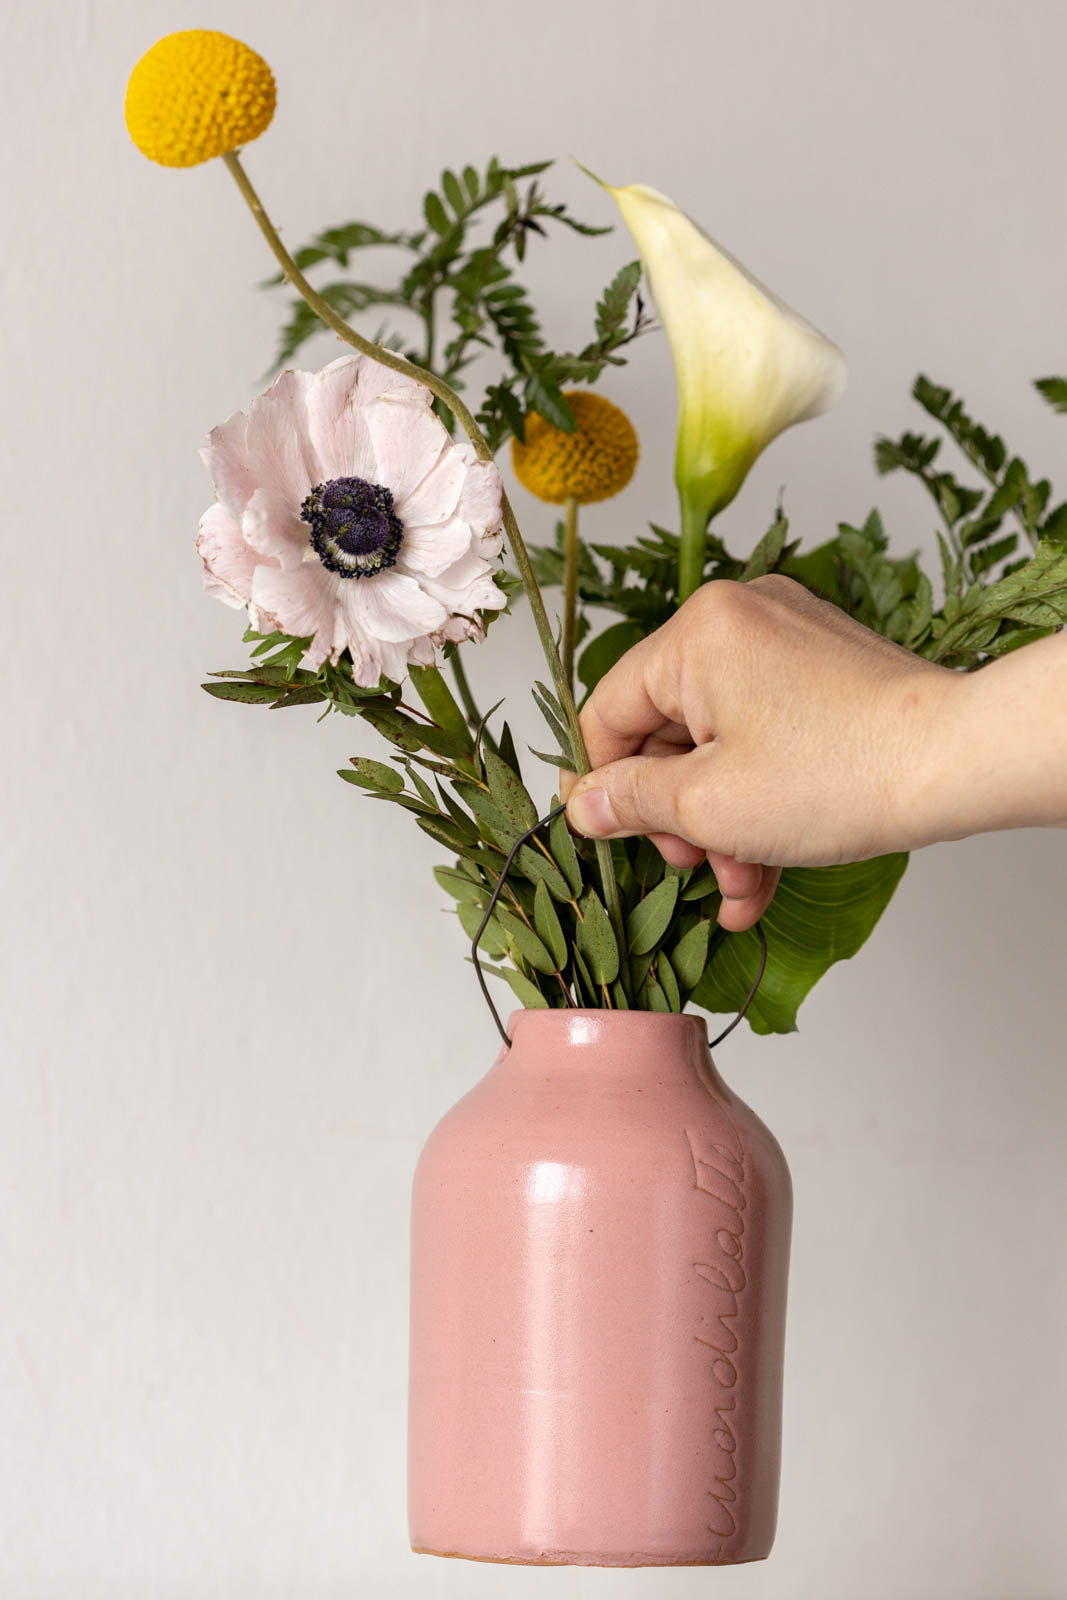 Vaso per fiori rosa antico altezza 15cm